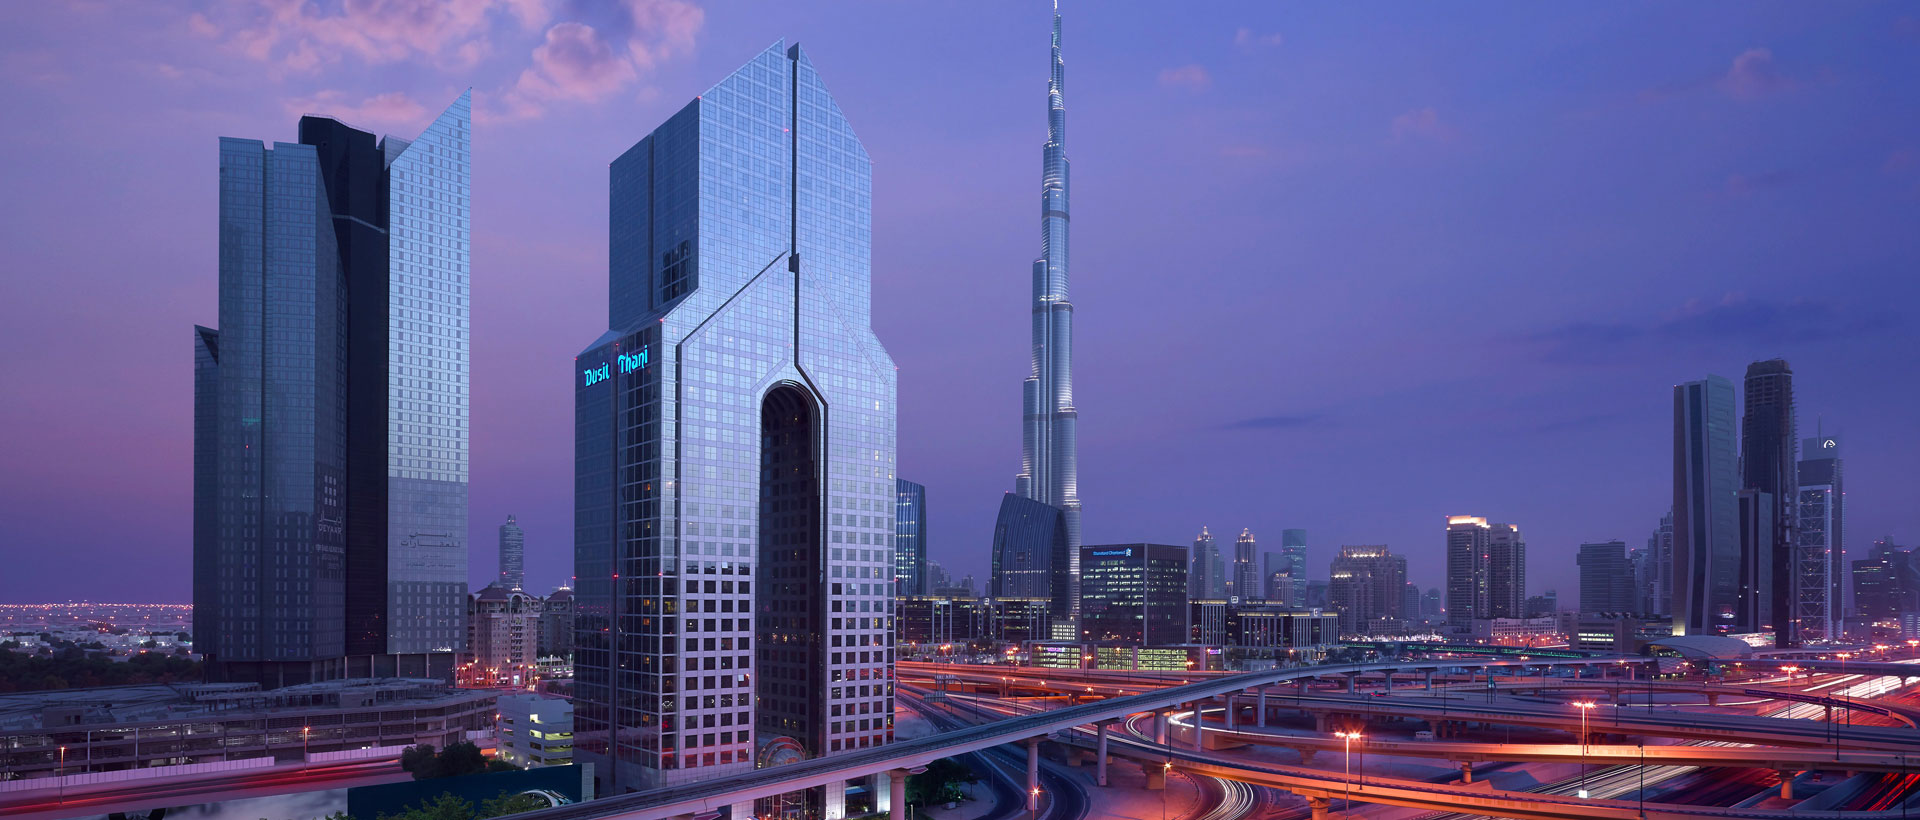 DusitThani These are the coolest Dubai skyscraper buildings in Dubai